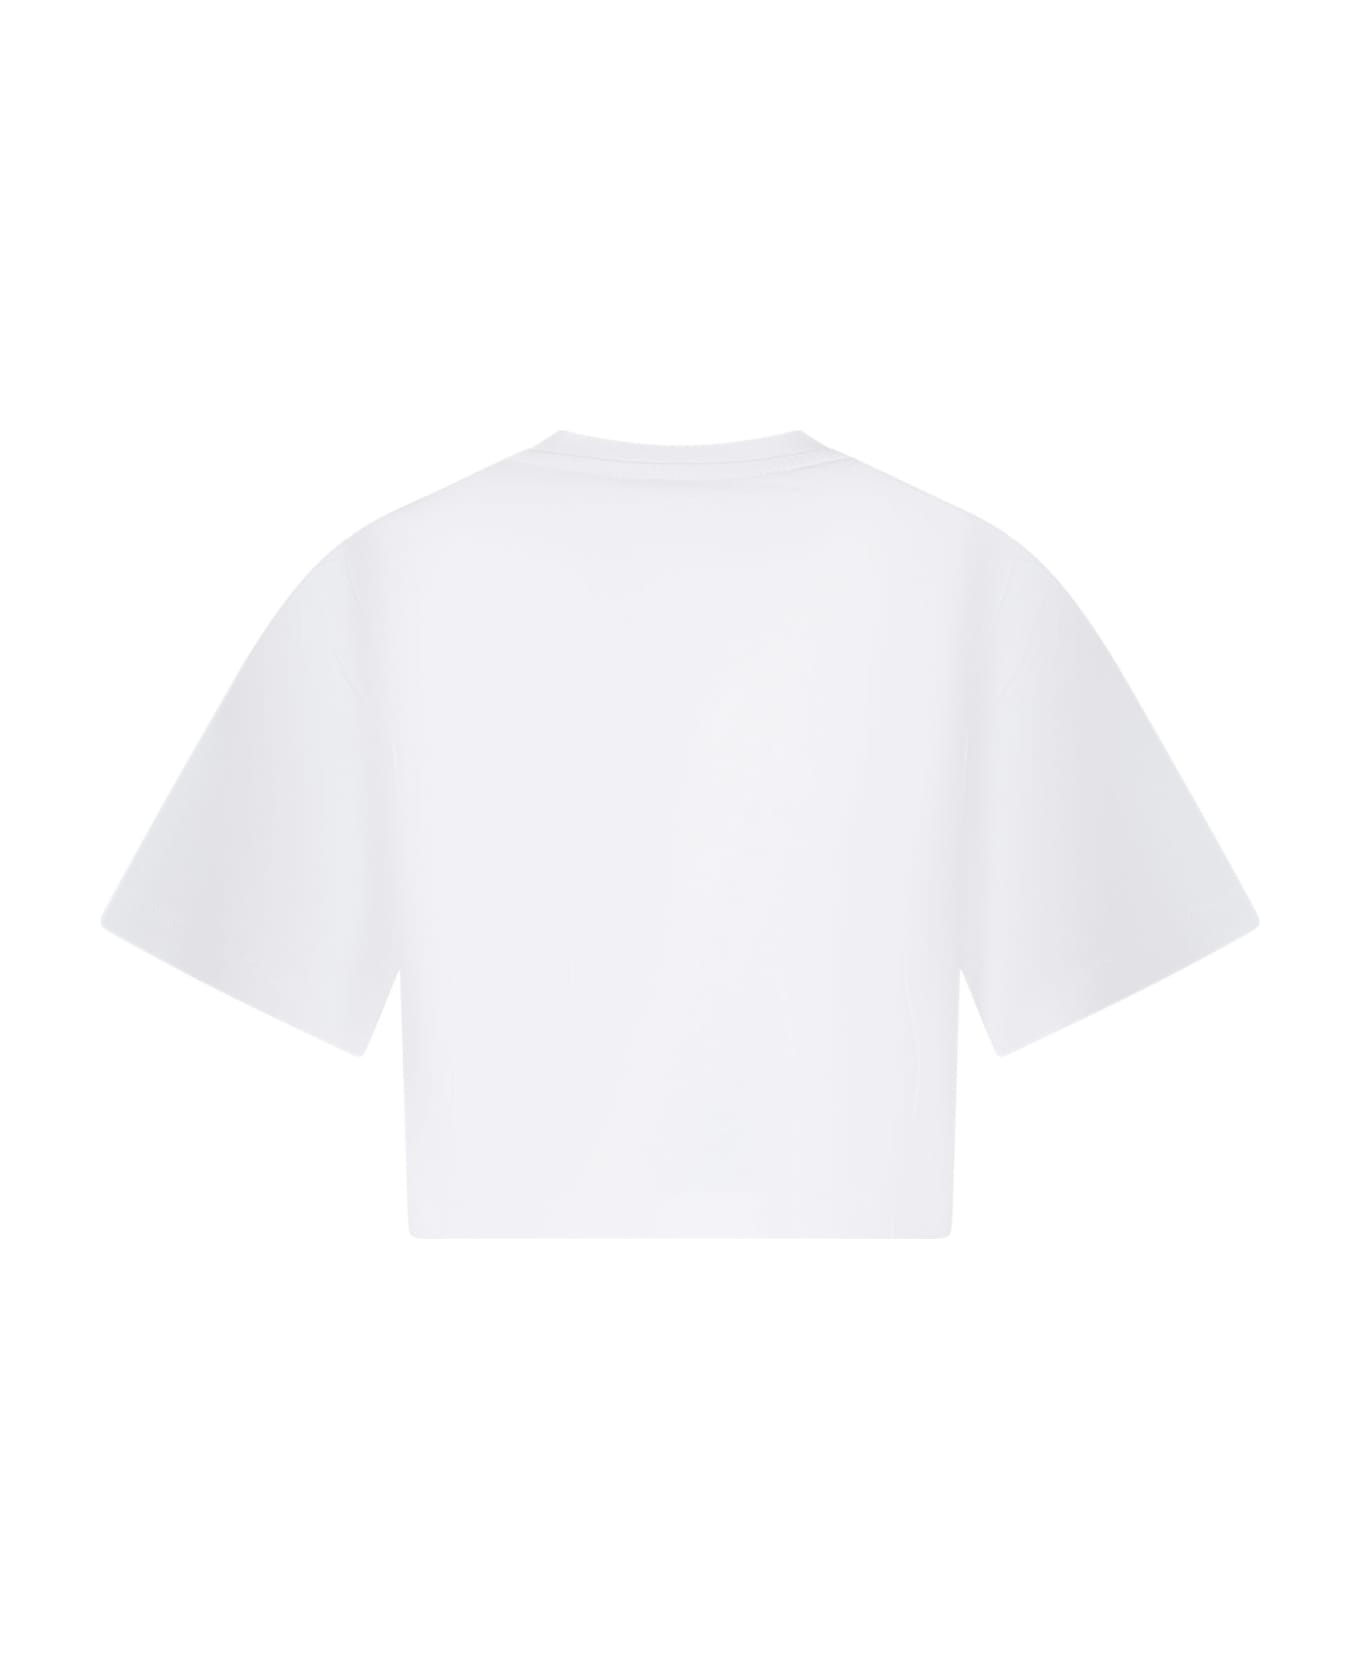 Etro White T-shirt For Girl With Logo - White